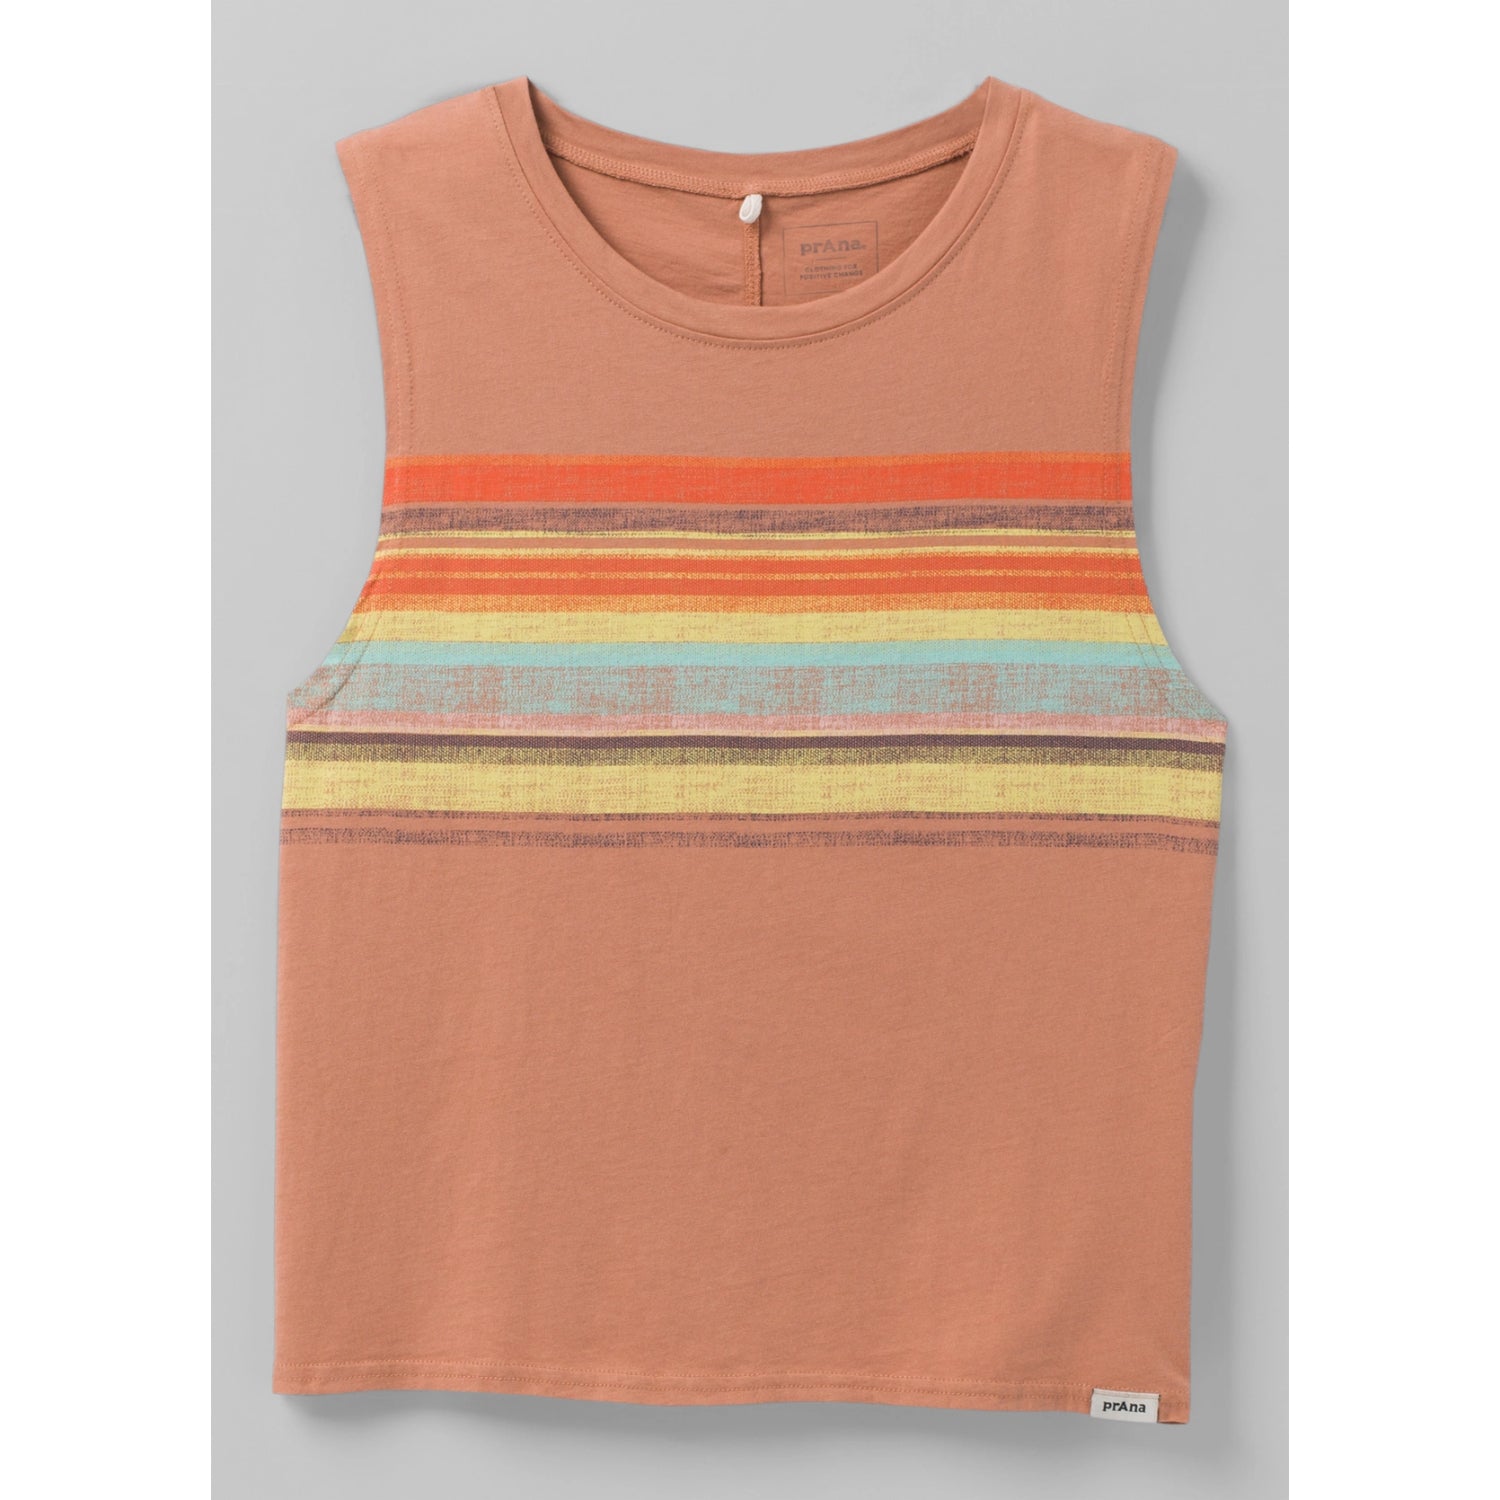 Prana Organic Graphic Sleeveless T-Shirt Womens in Pink Sand Baja